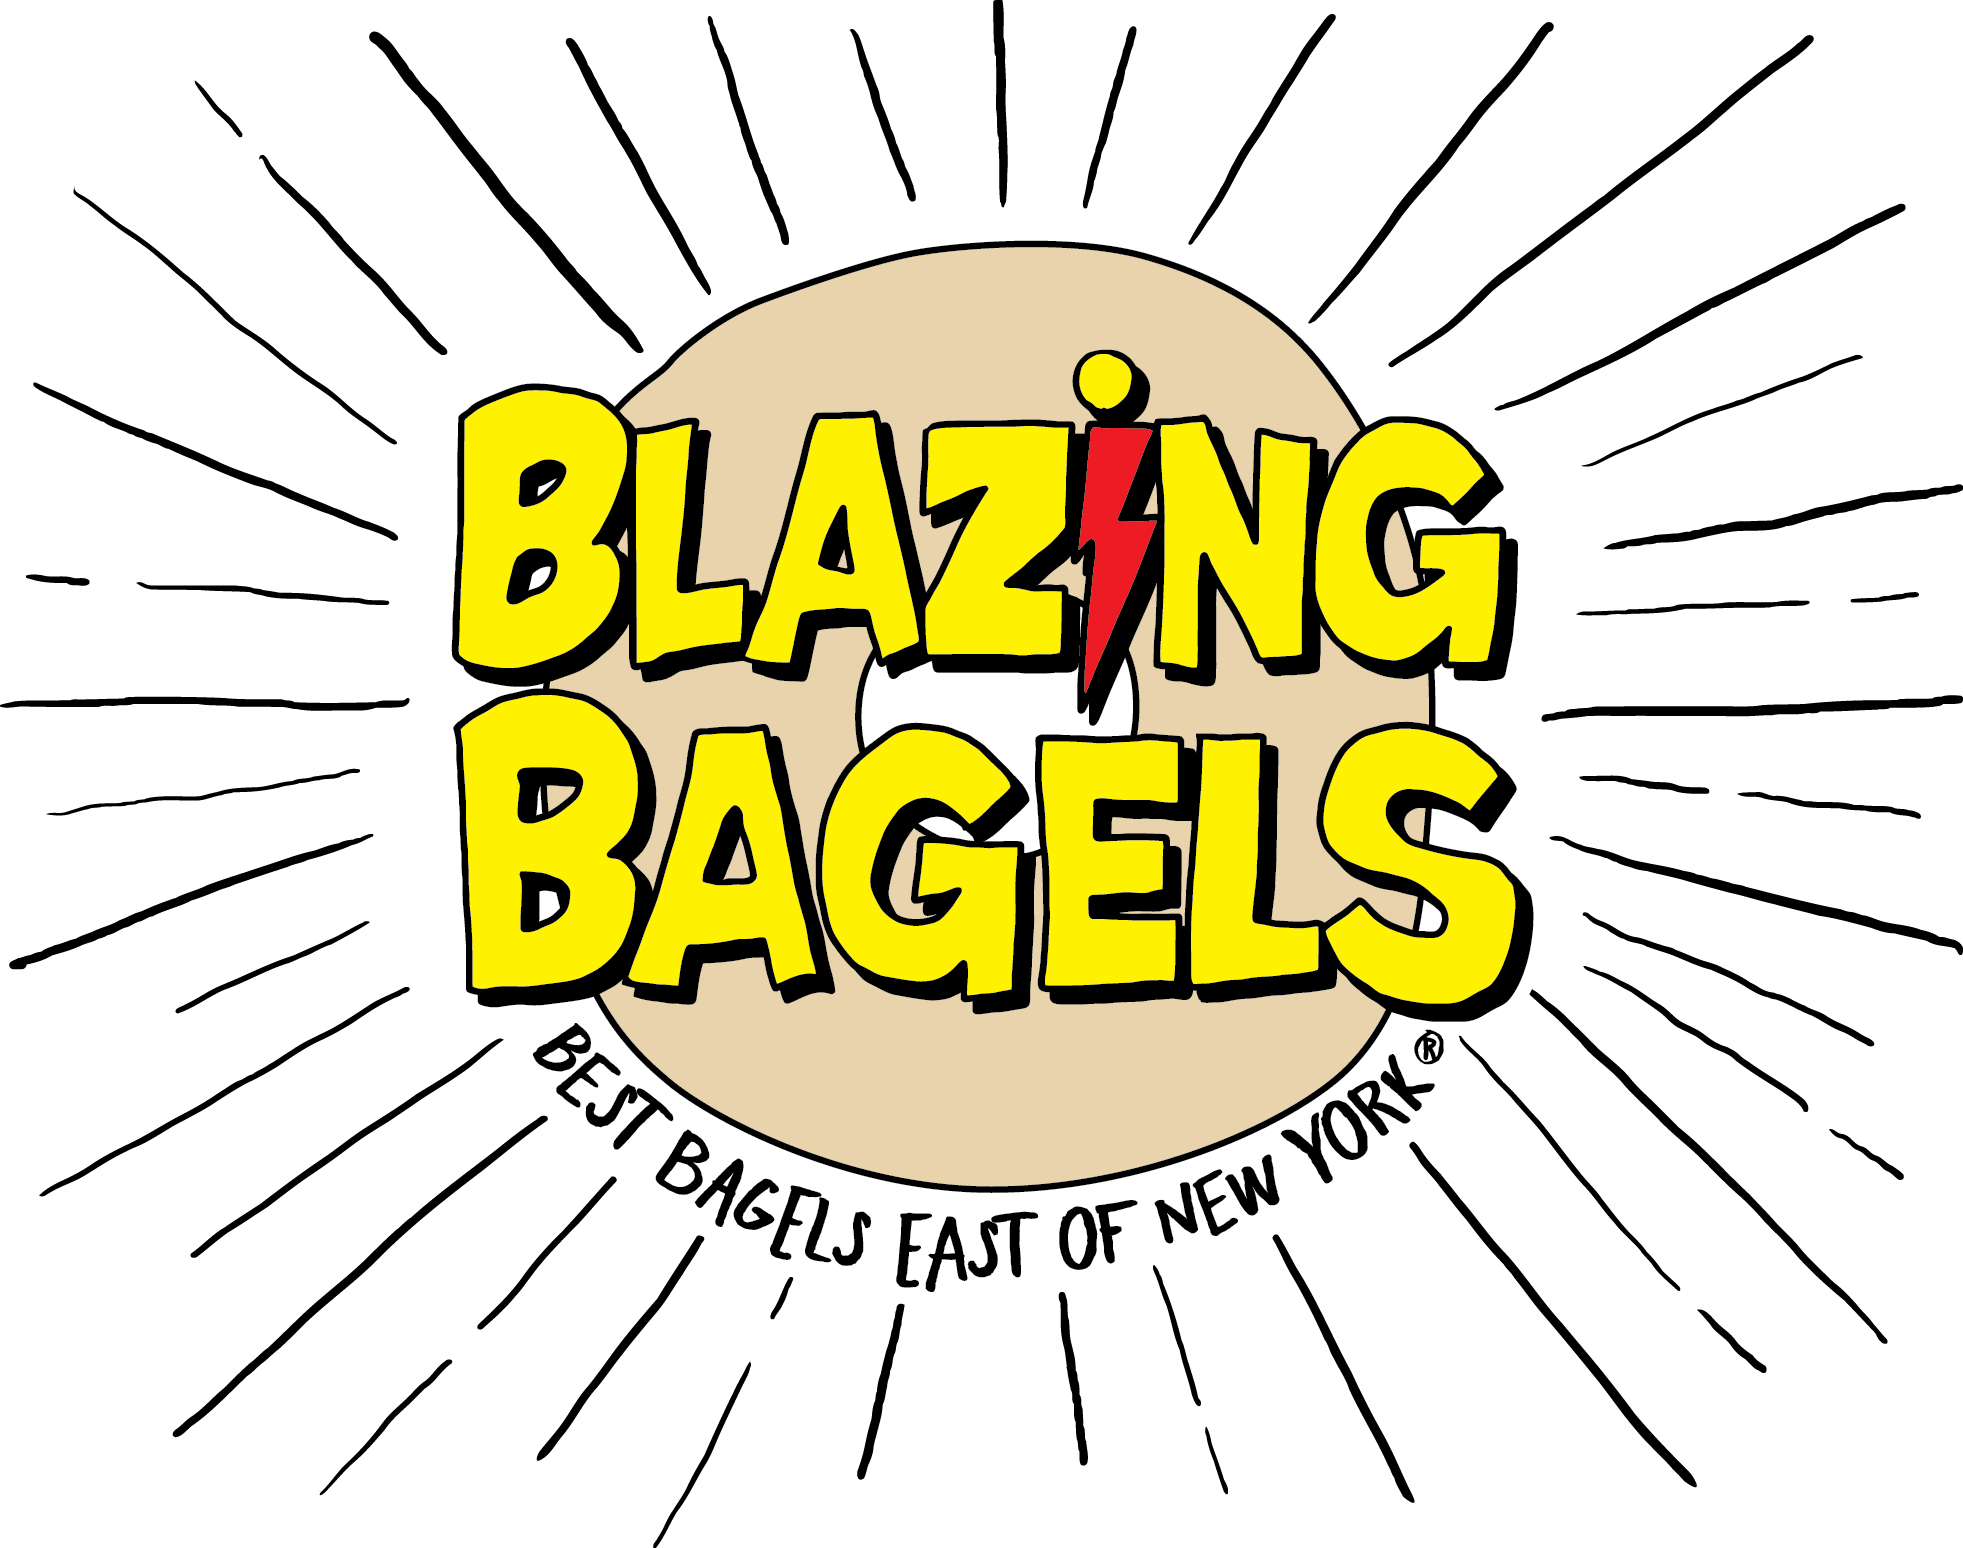 Blazing Bagels - Redmond